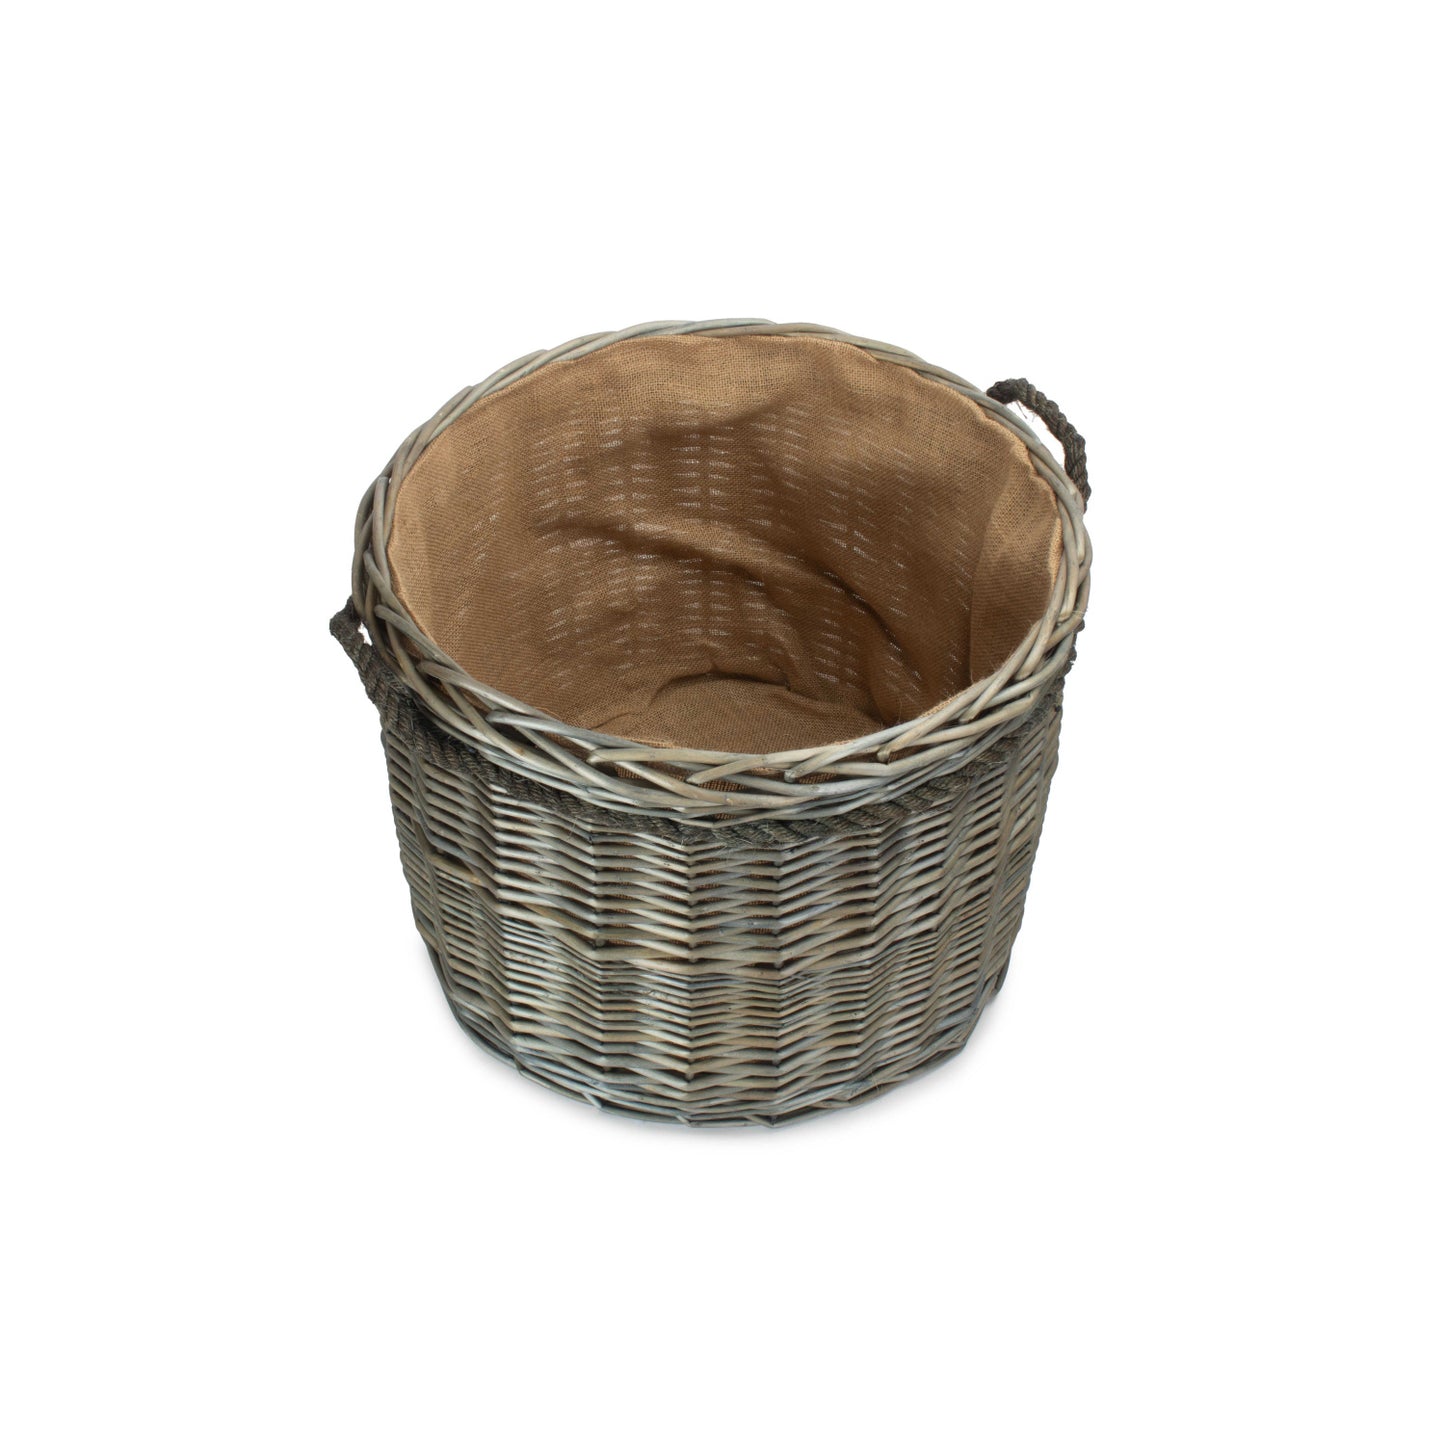 Size 2 Antique Wash Round Storage Basket